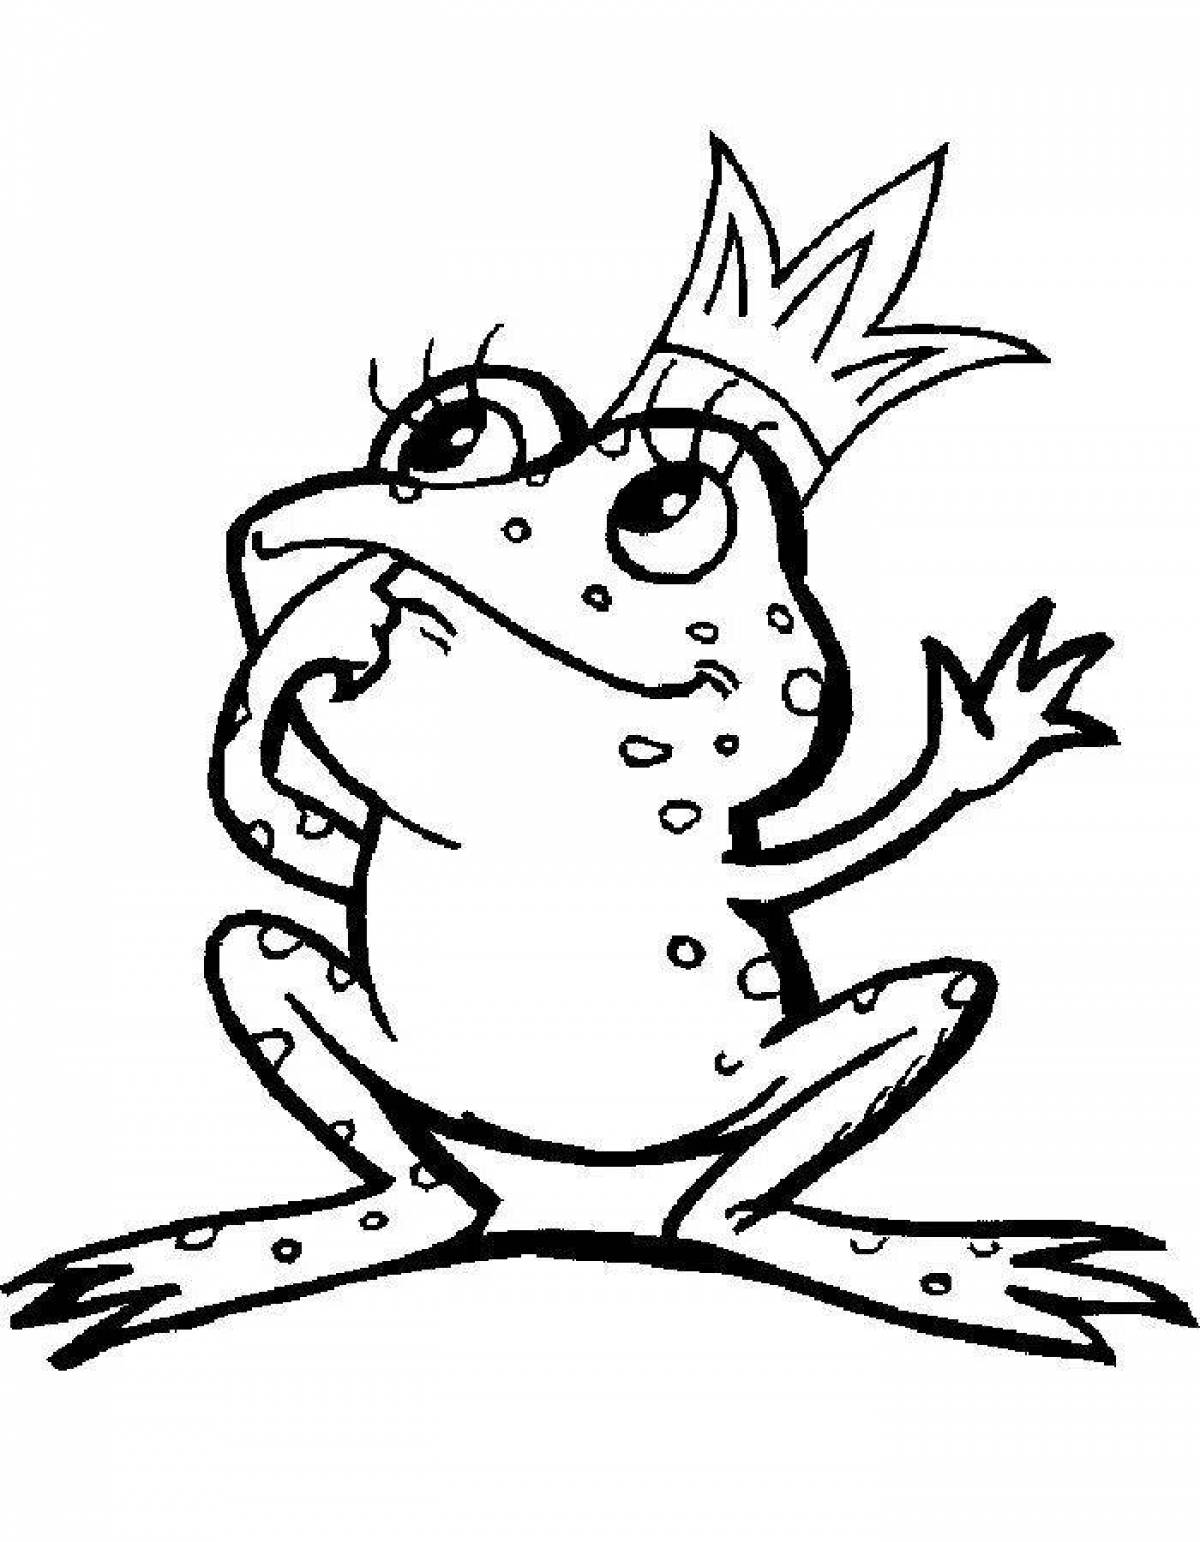 Princess frog for children #1